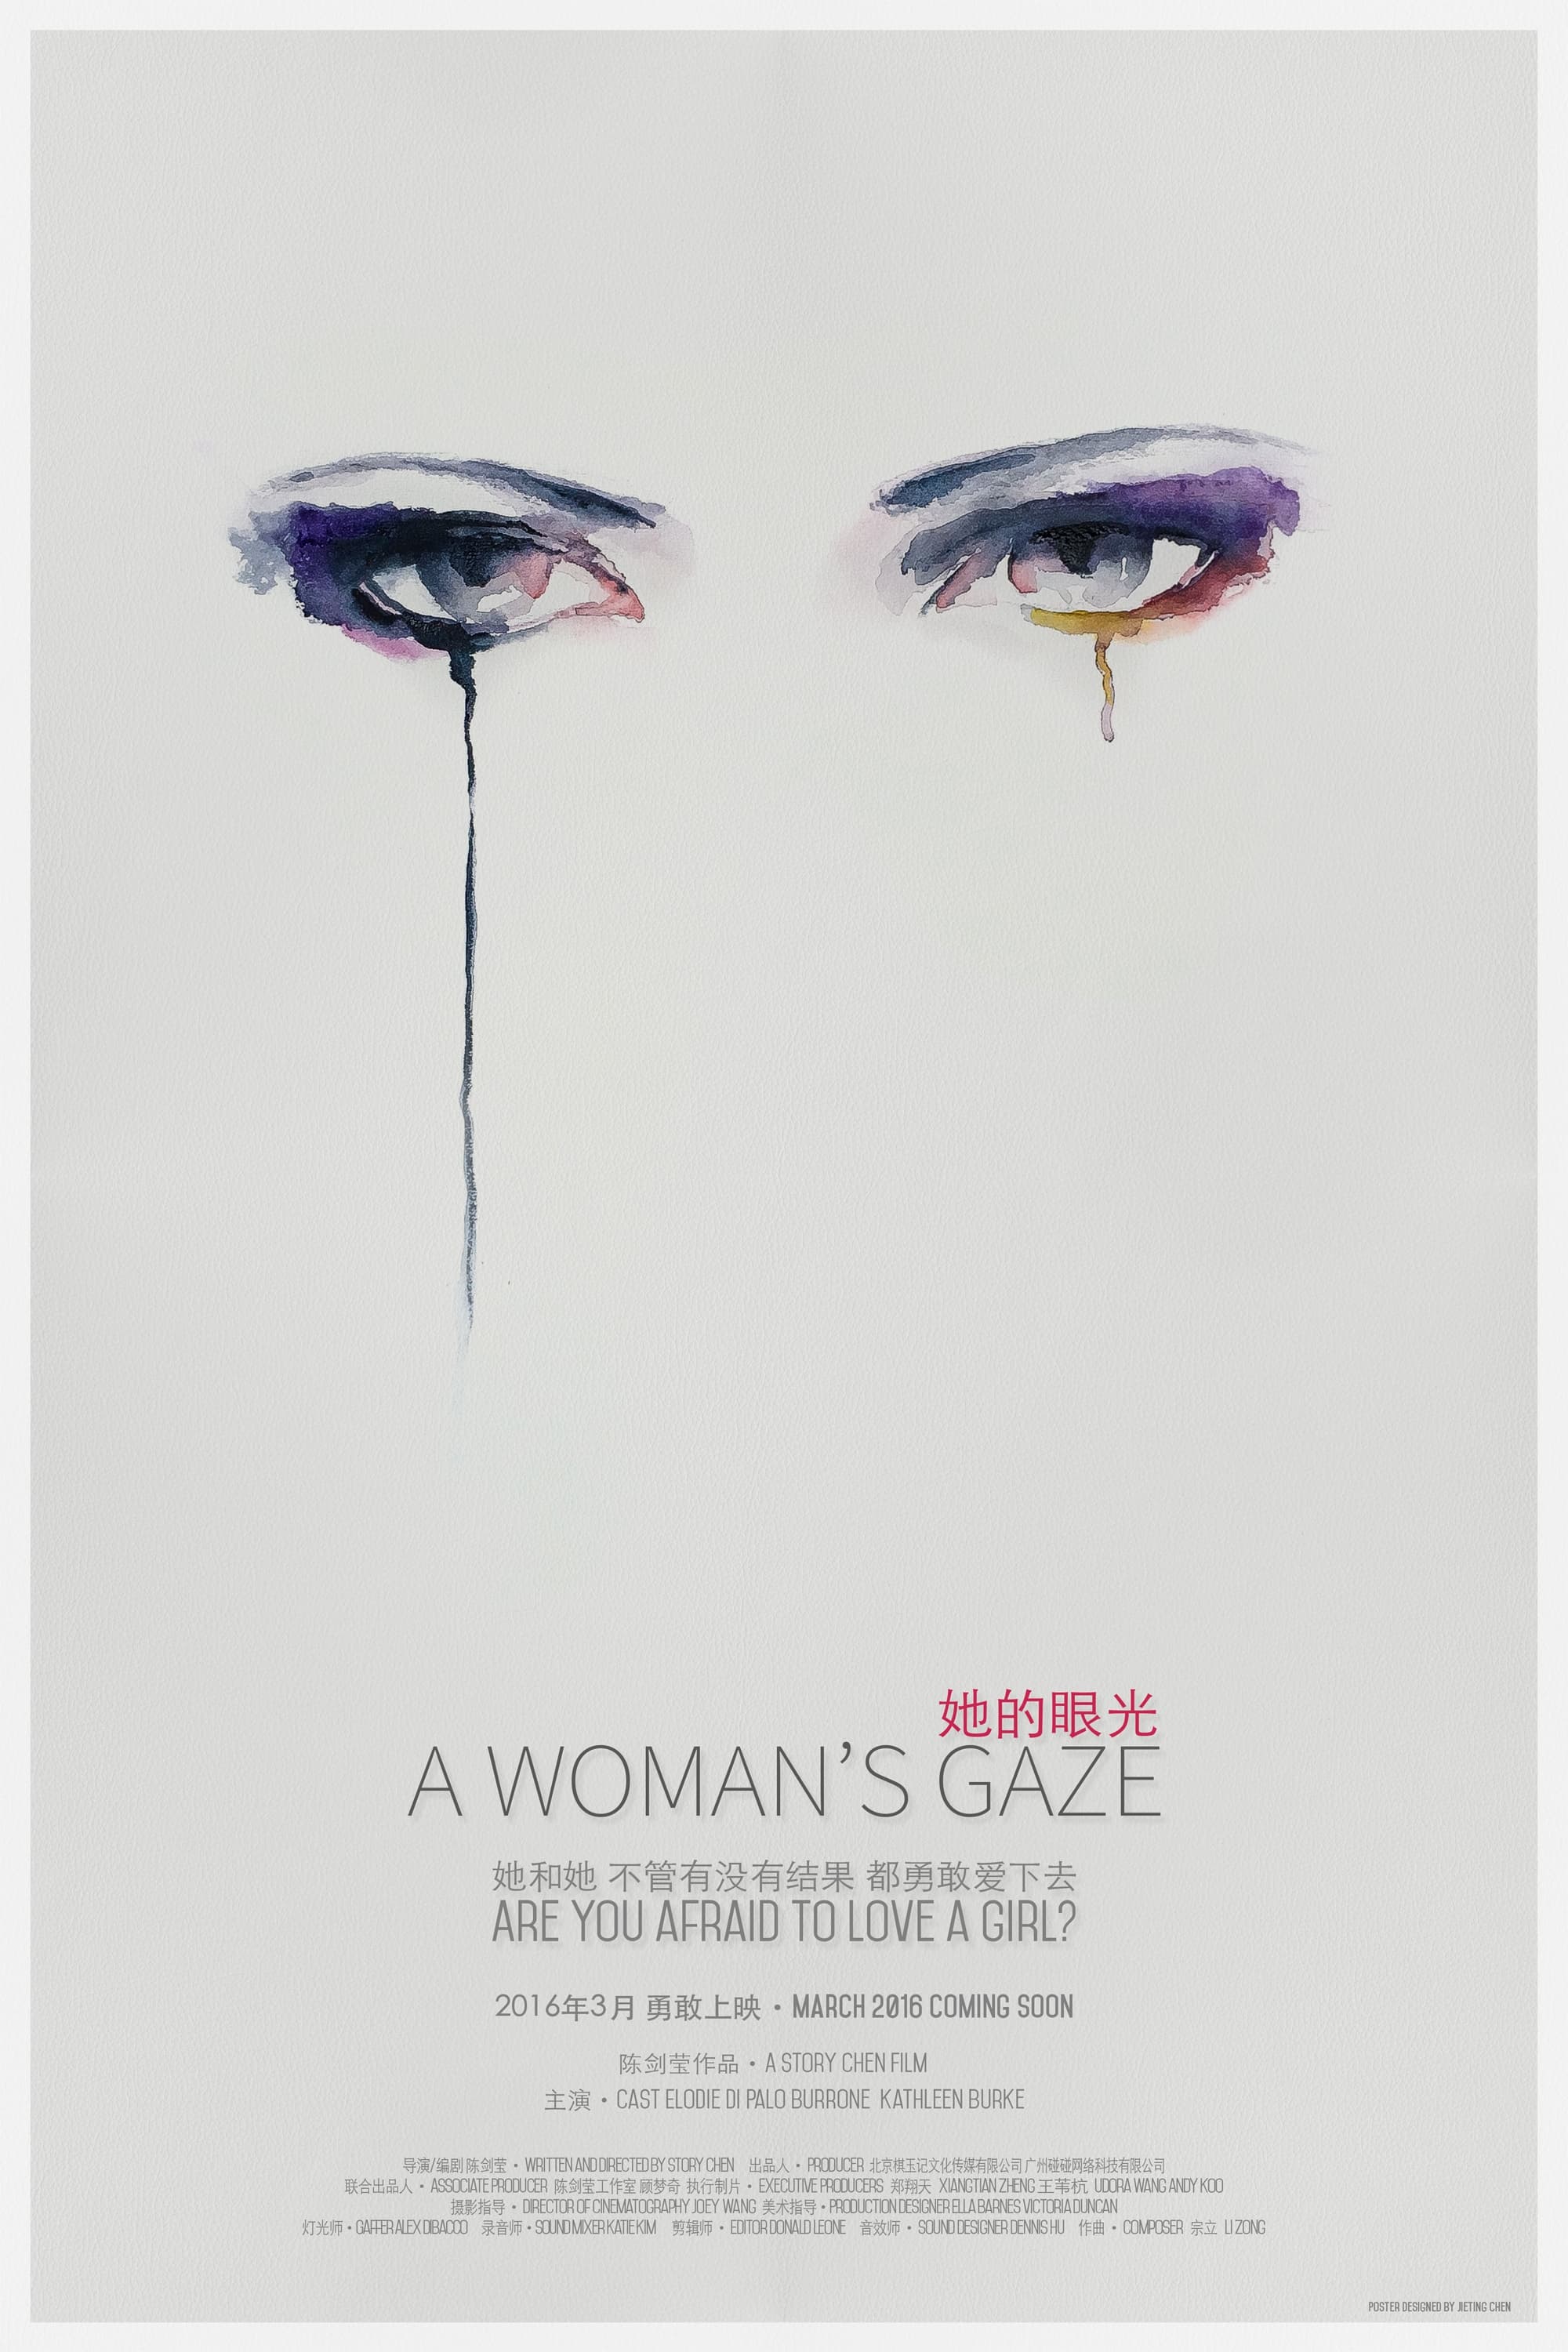 A Woman's Gaze